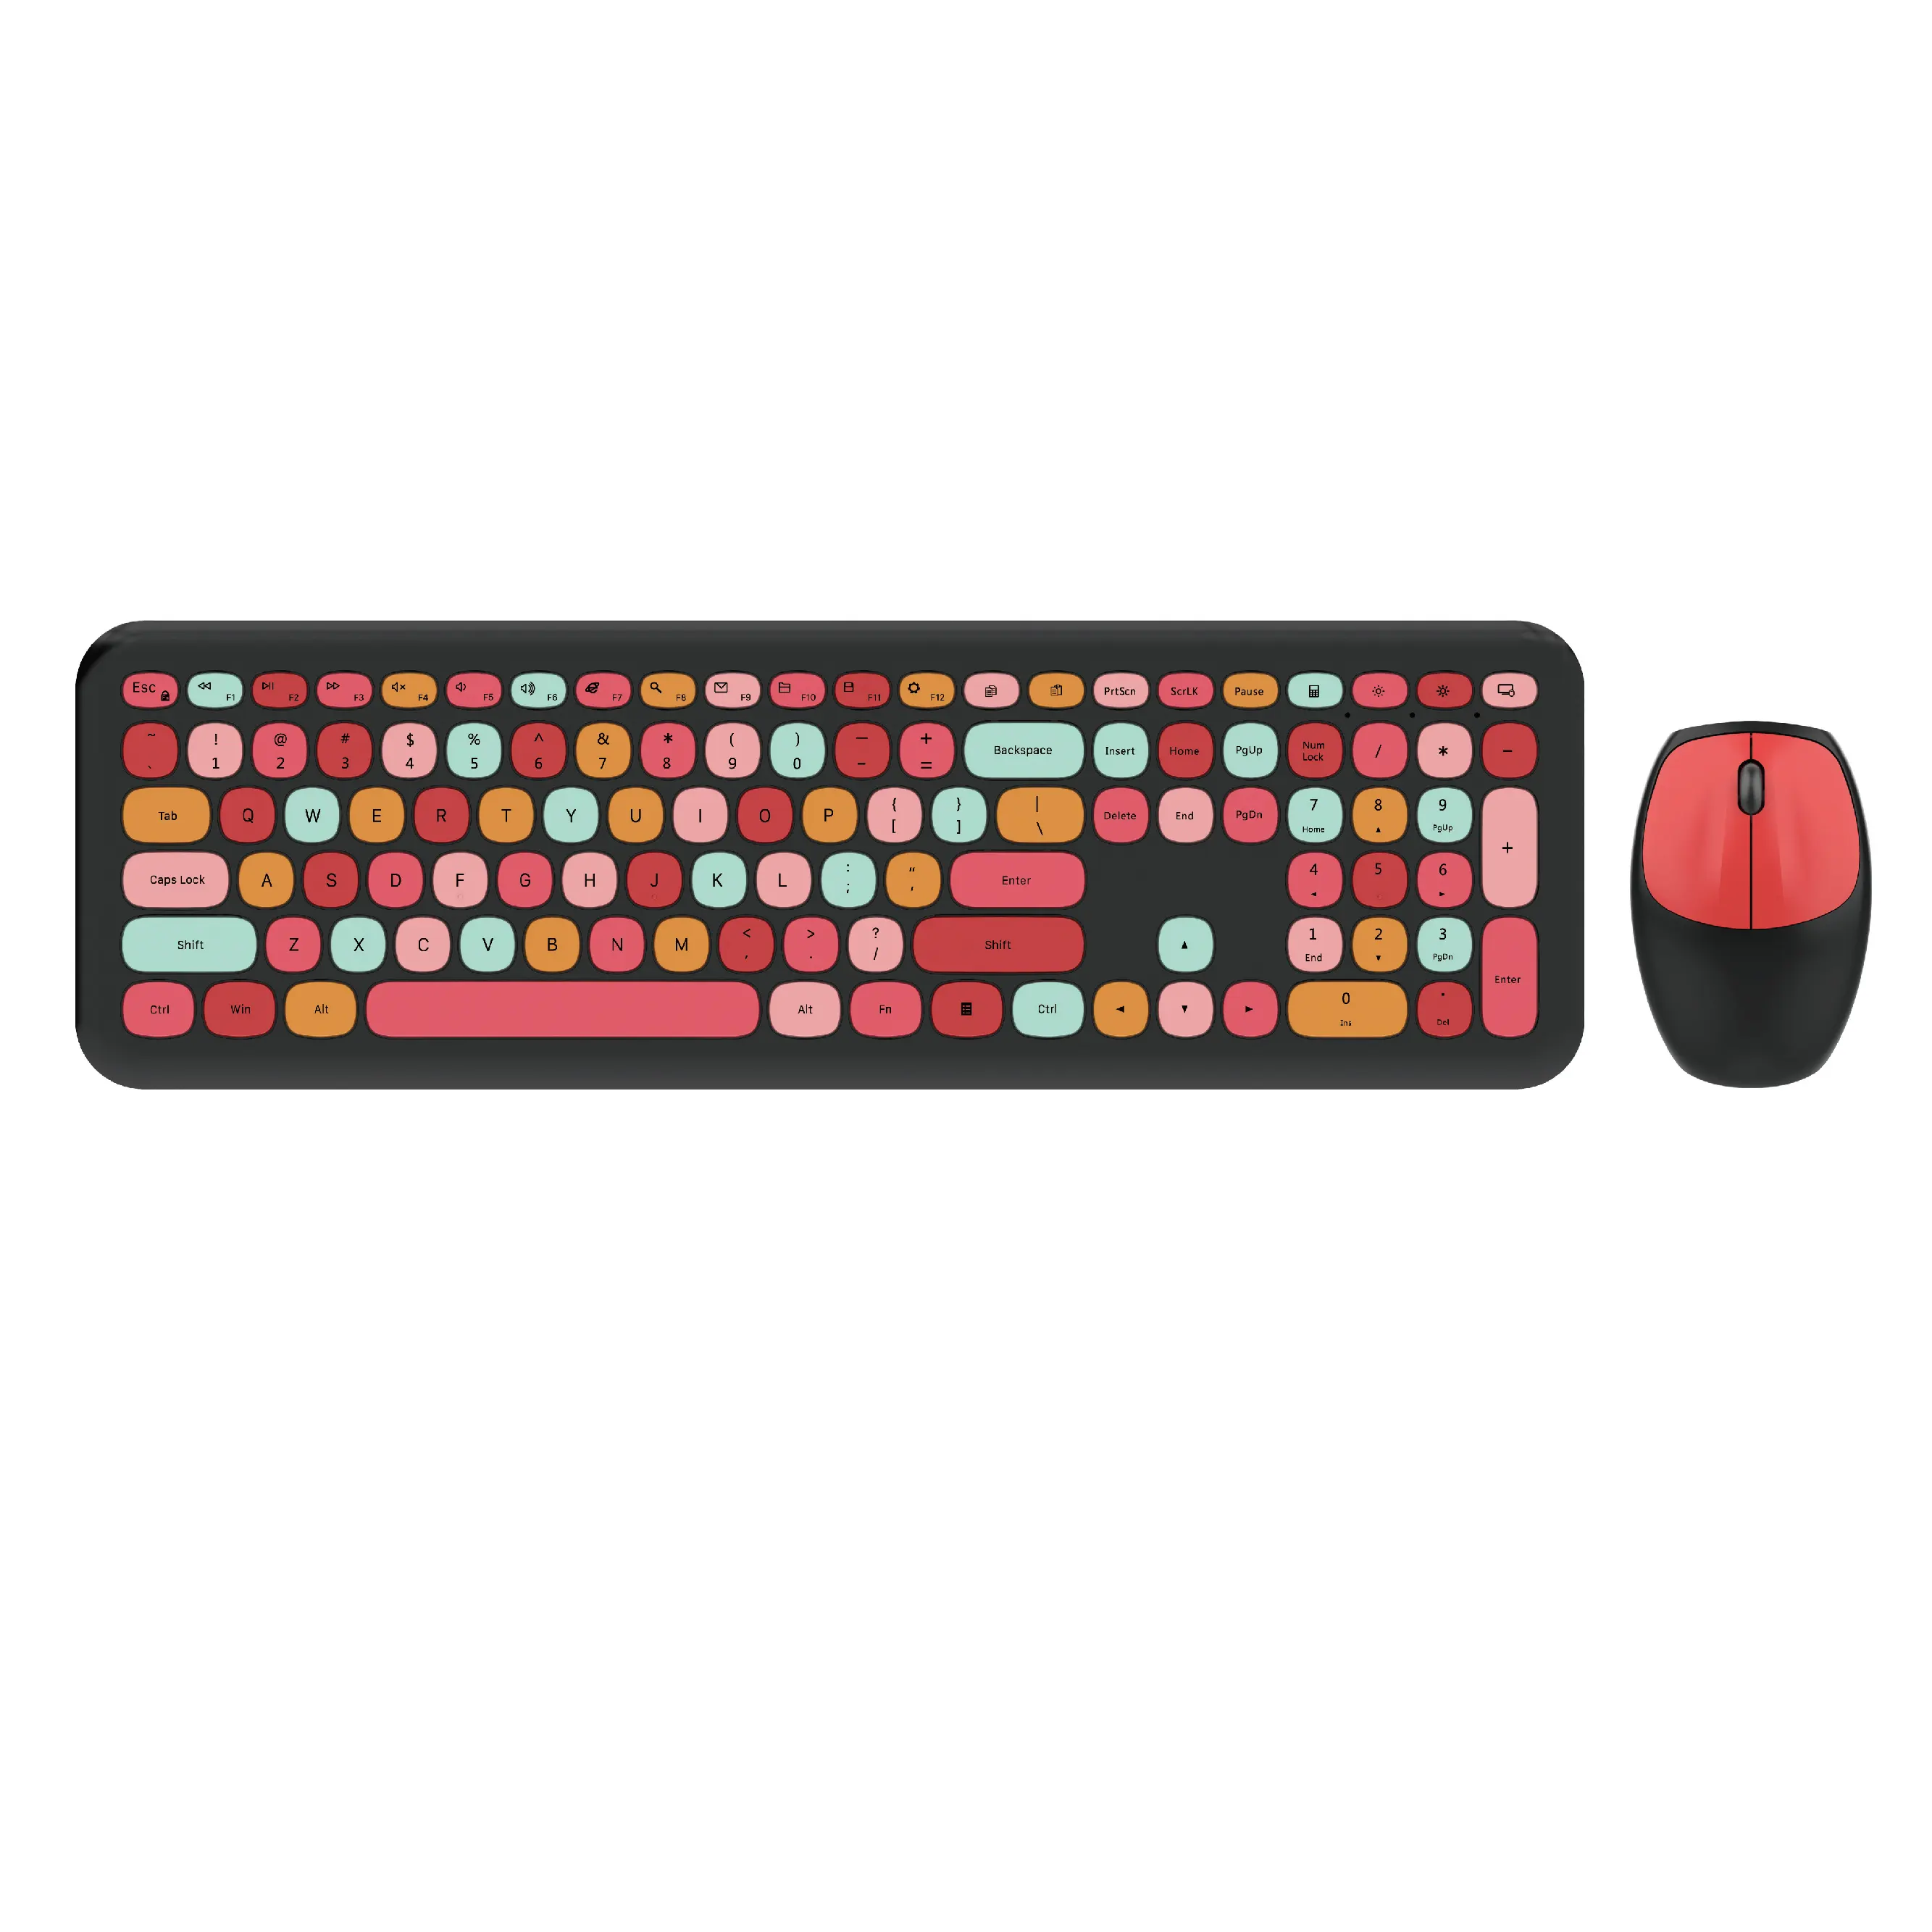 MOFii mouse keyboard nirkabel, kombinasi berbagai warna dan tangan kiri dan kanan untuk kantor